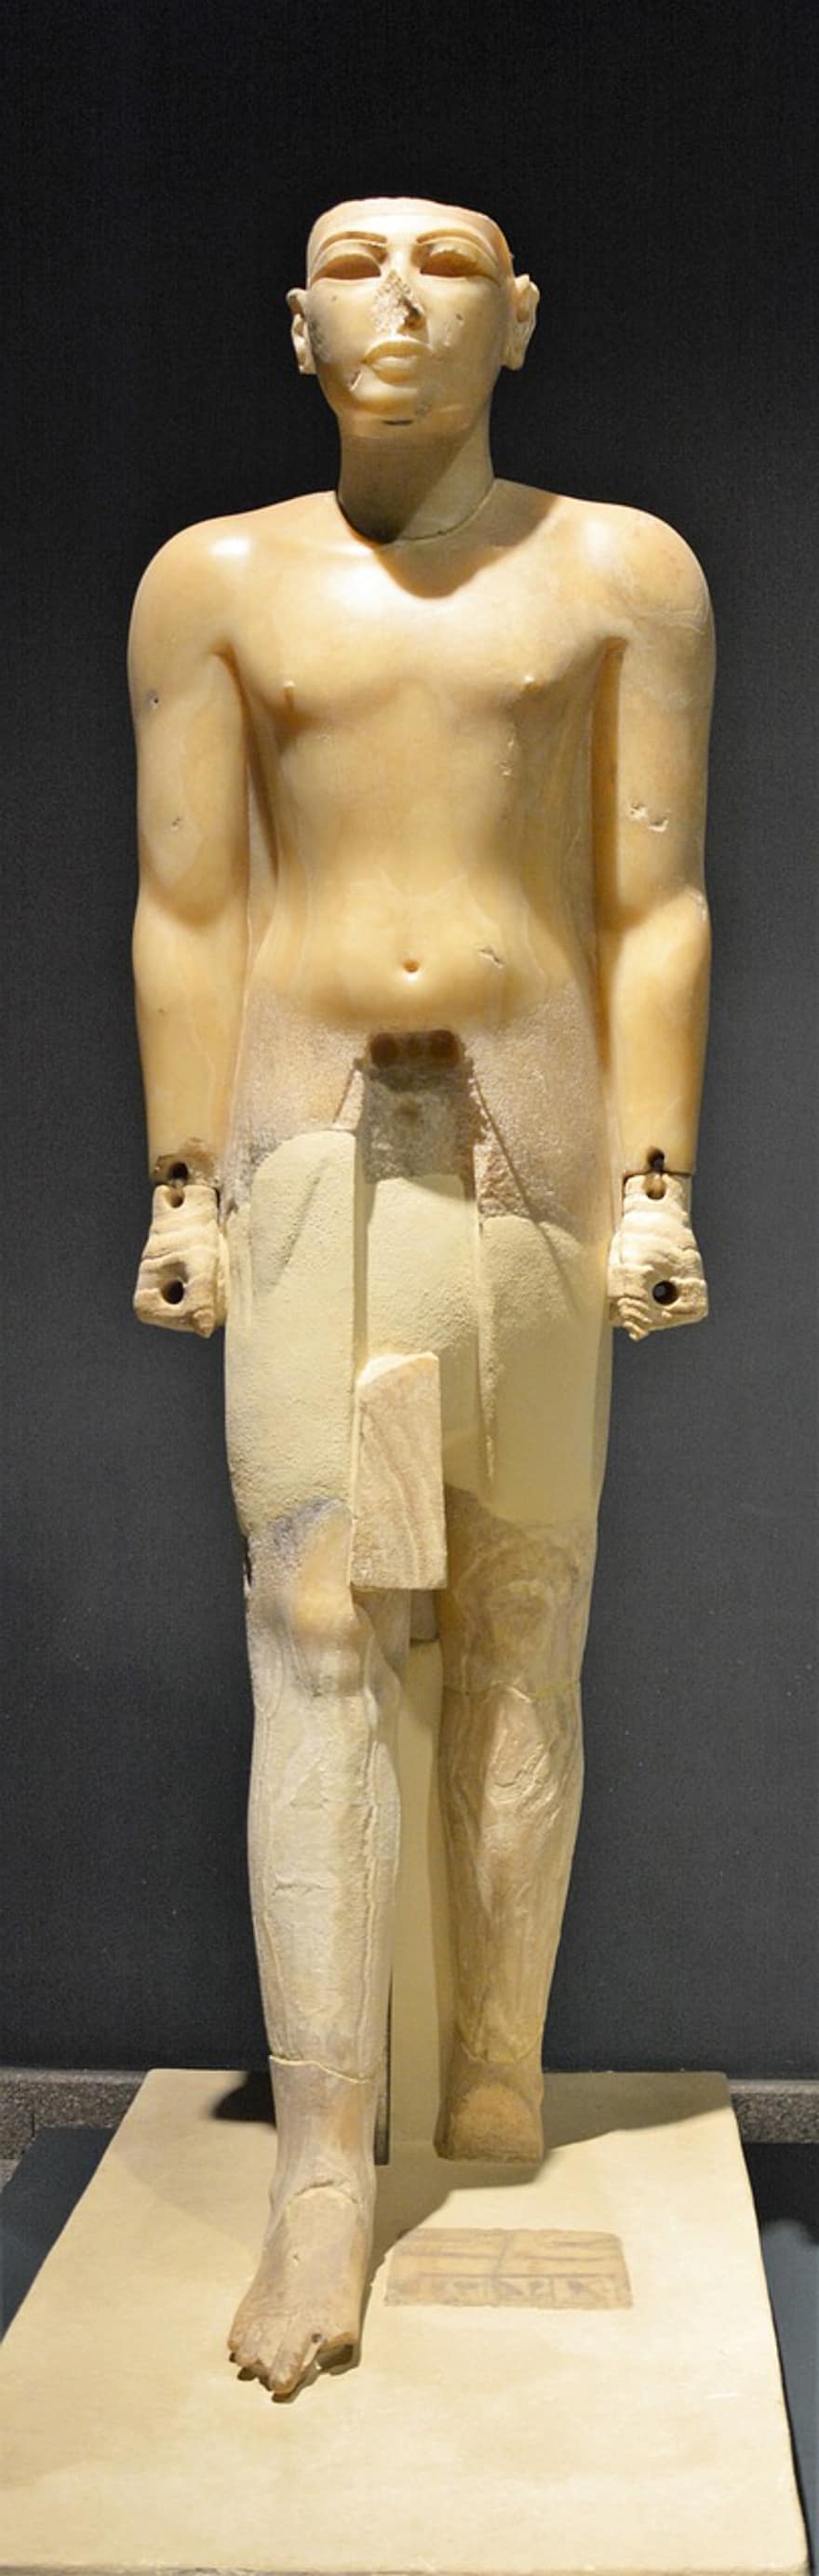 staty, forntida skulptur, Forntida egyptisk artefakt, museum